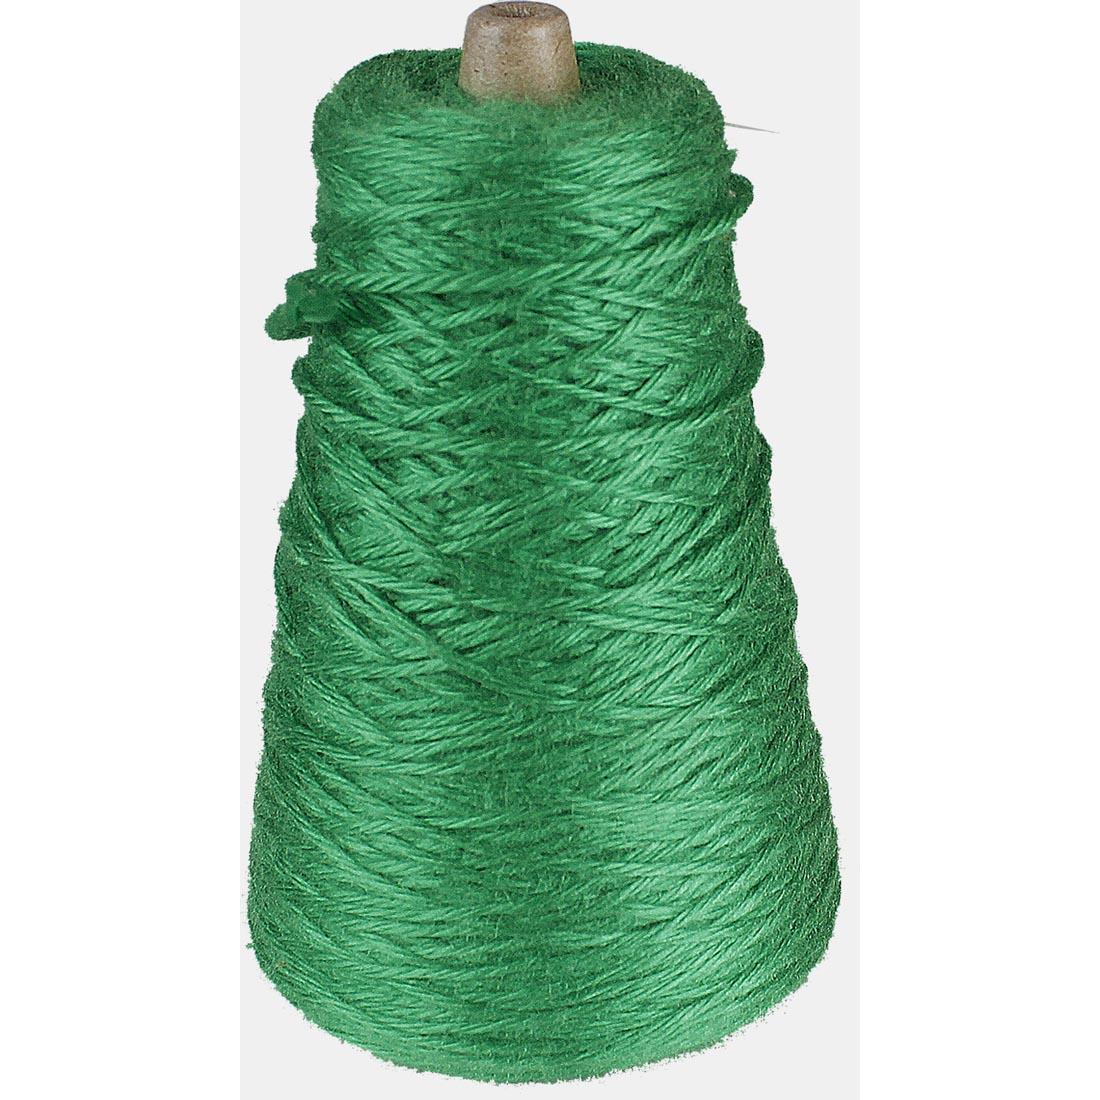 Cone of Green Trait-tex 4-Ply Yarn